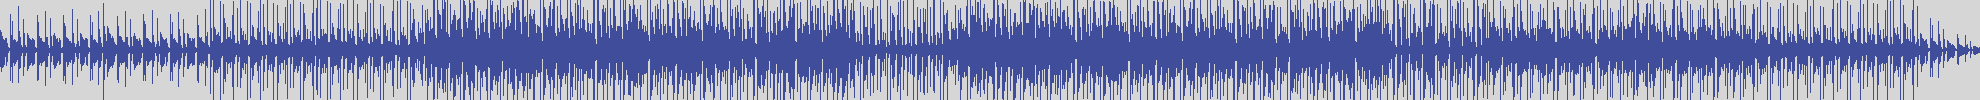 noclouds_chillout [NOC056] Ale B - Blue Concert [Original Mix] audio wave form